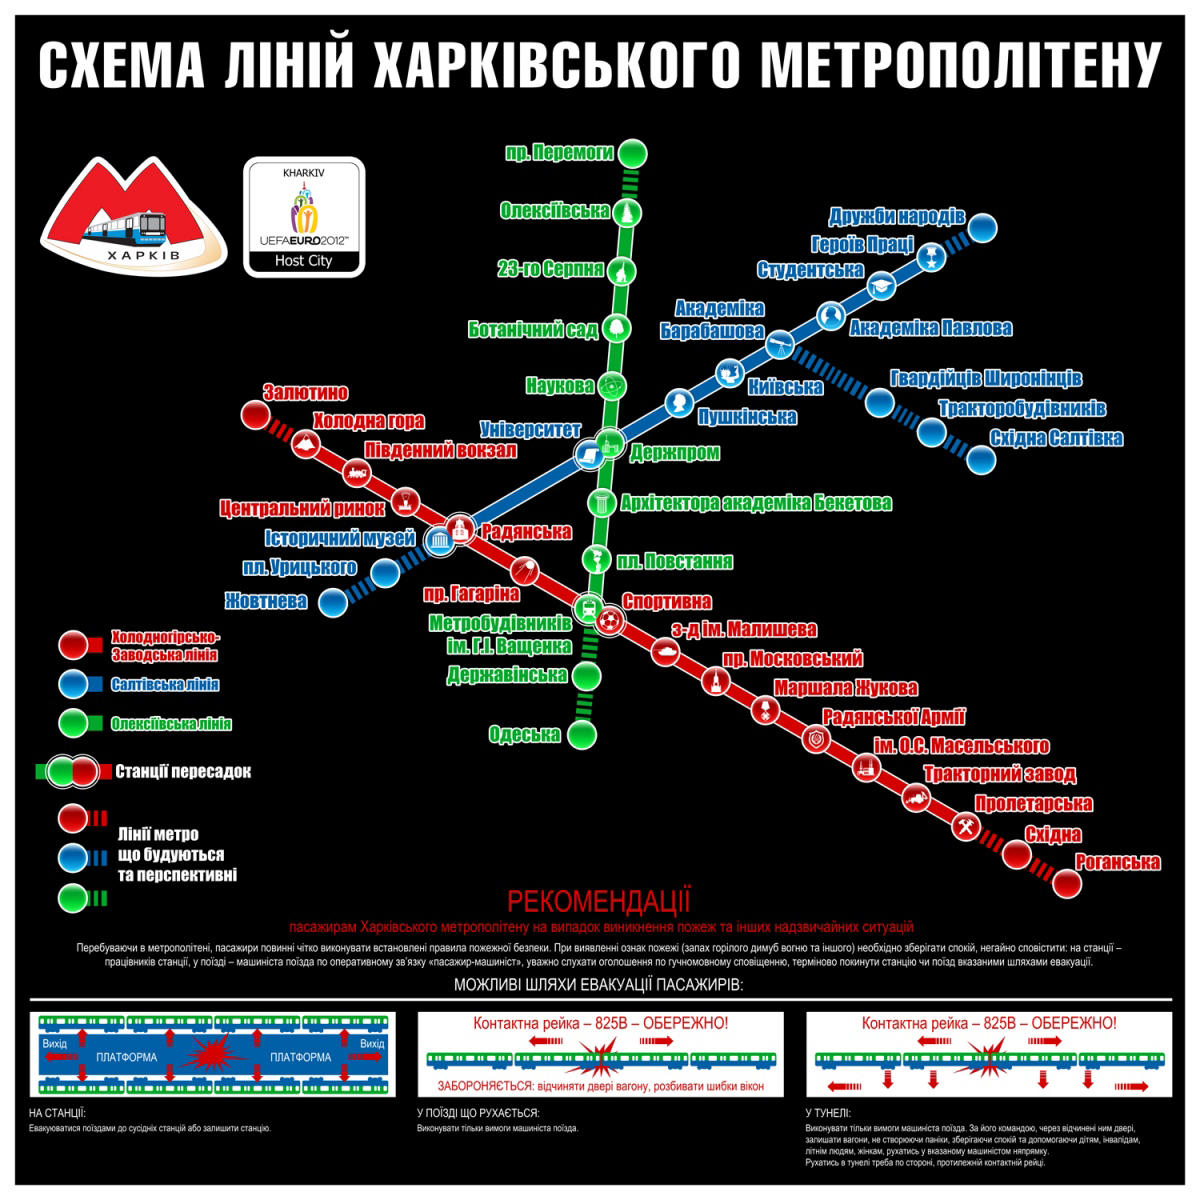 Харьков — Метрополитен — Схемы